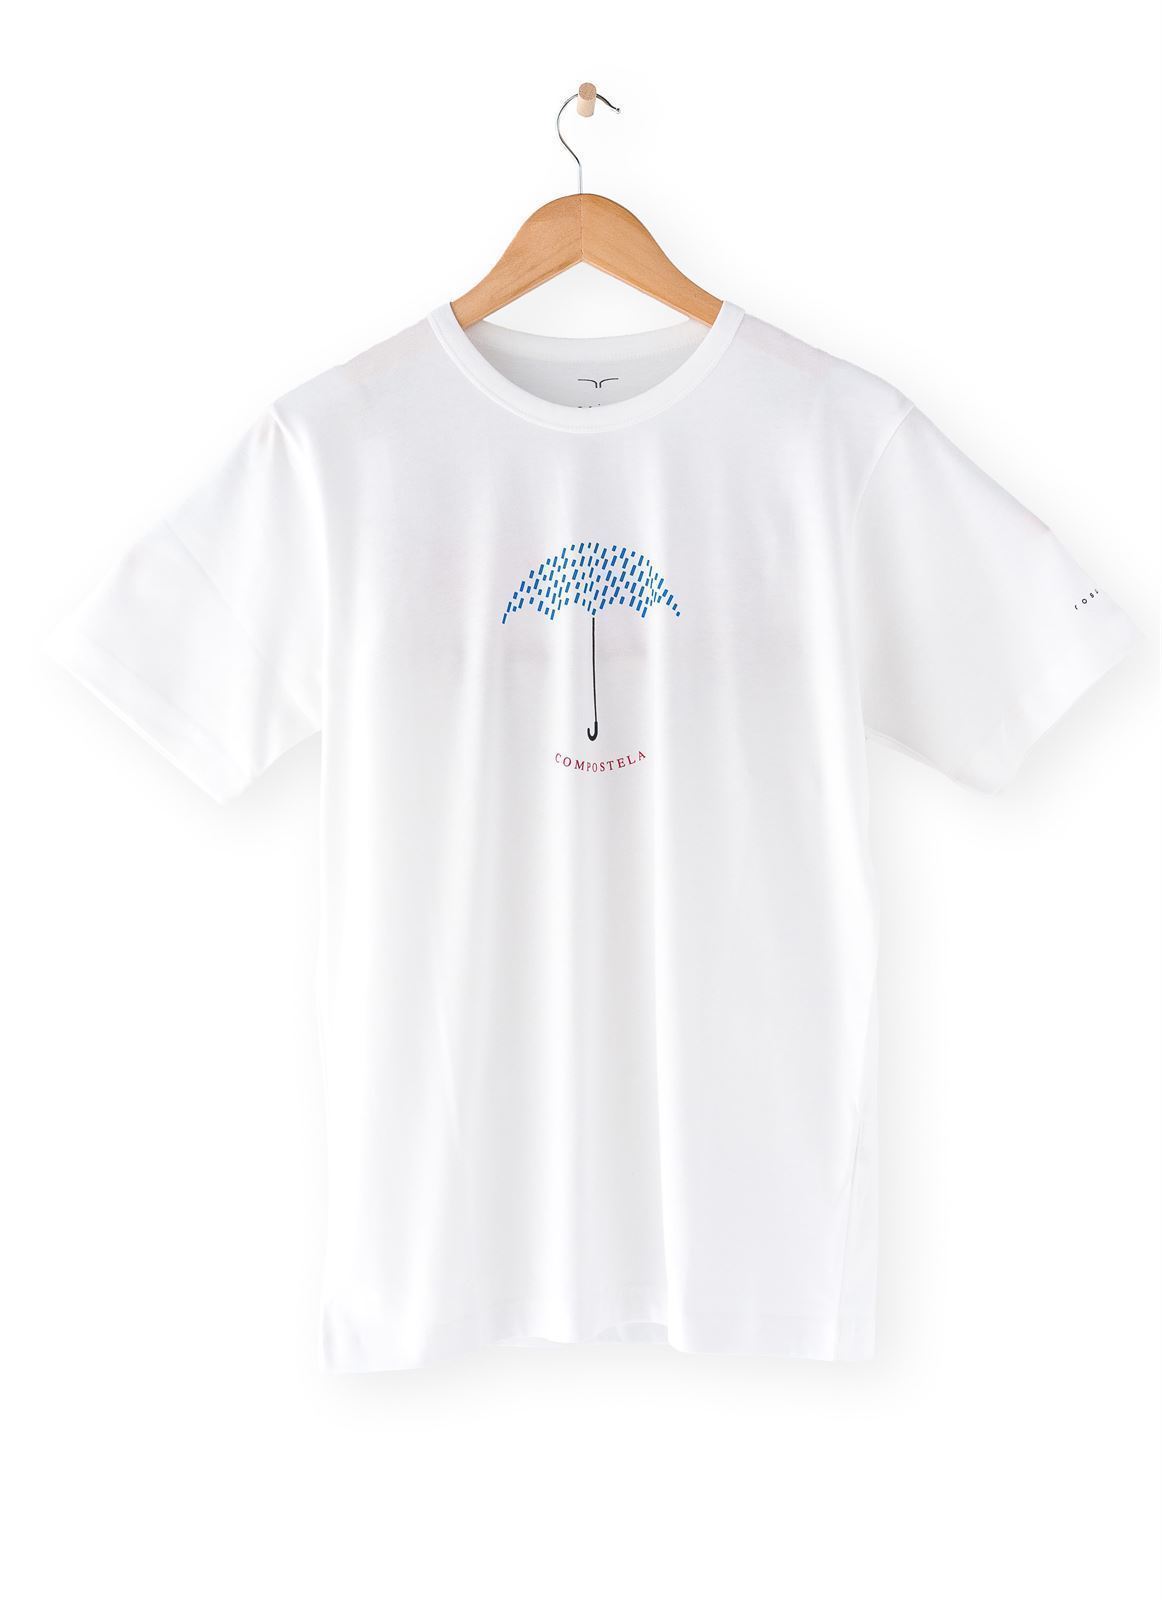 Camiseta Paraguas Compostela - Imagen 5